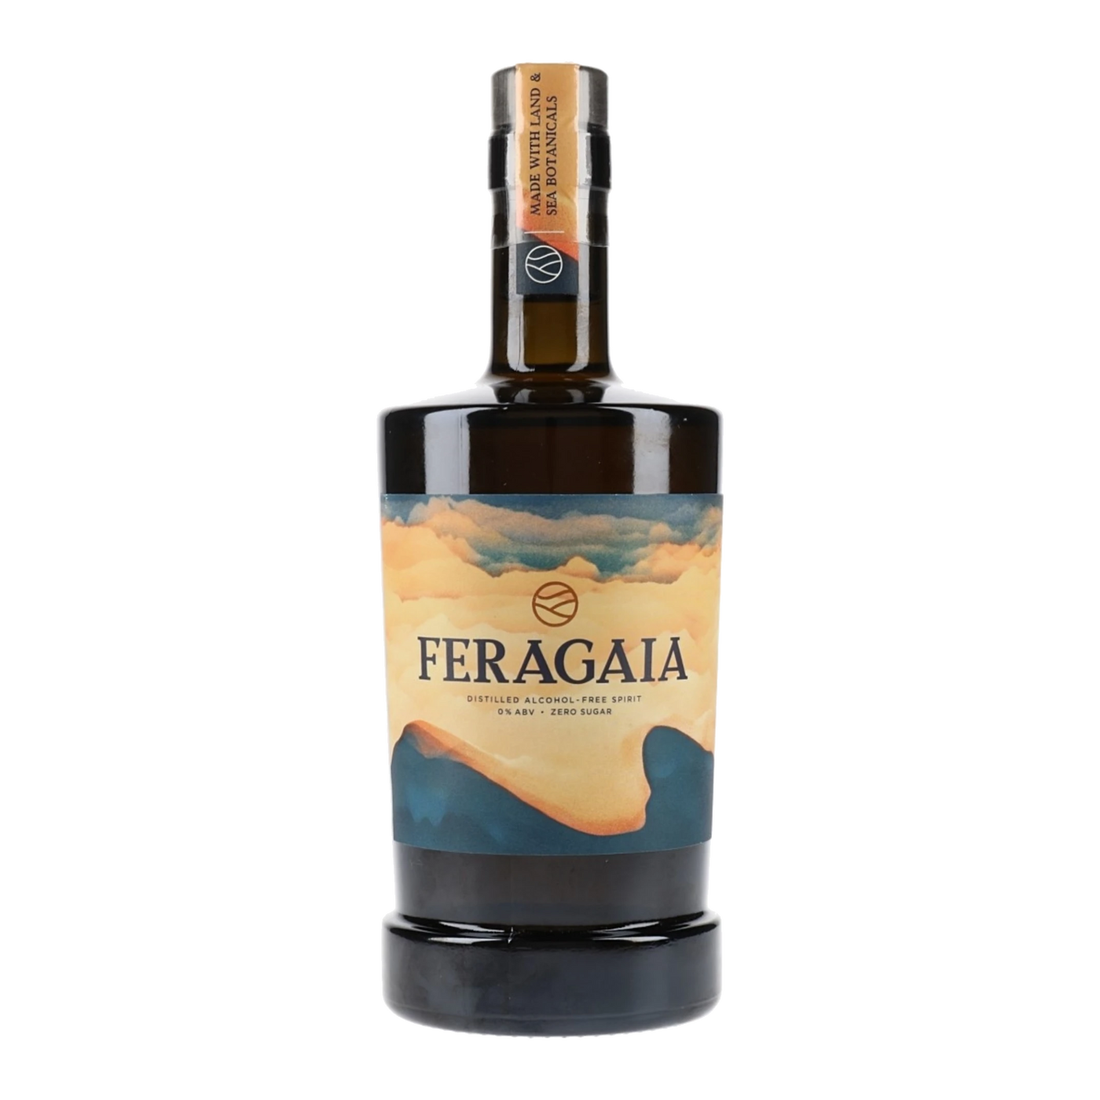 Feragaia non alcoholic spirit